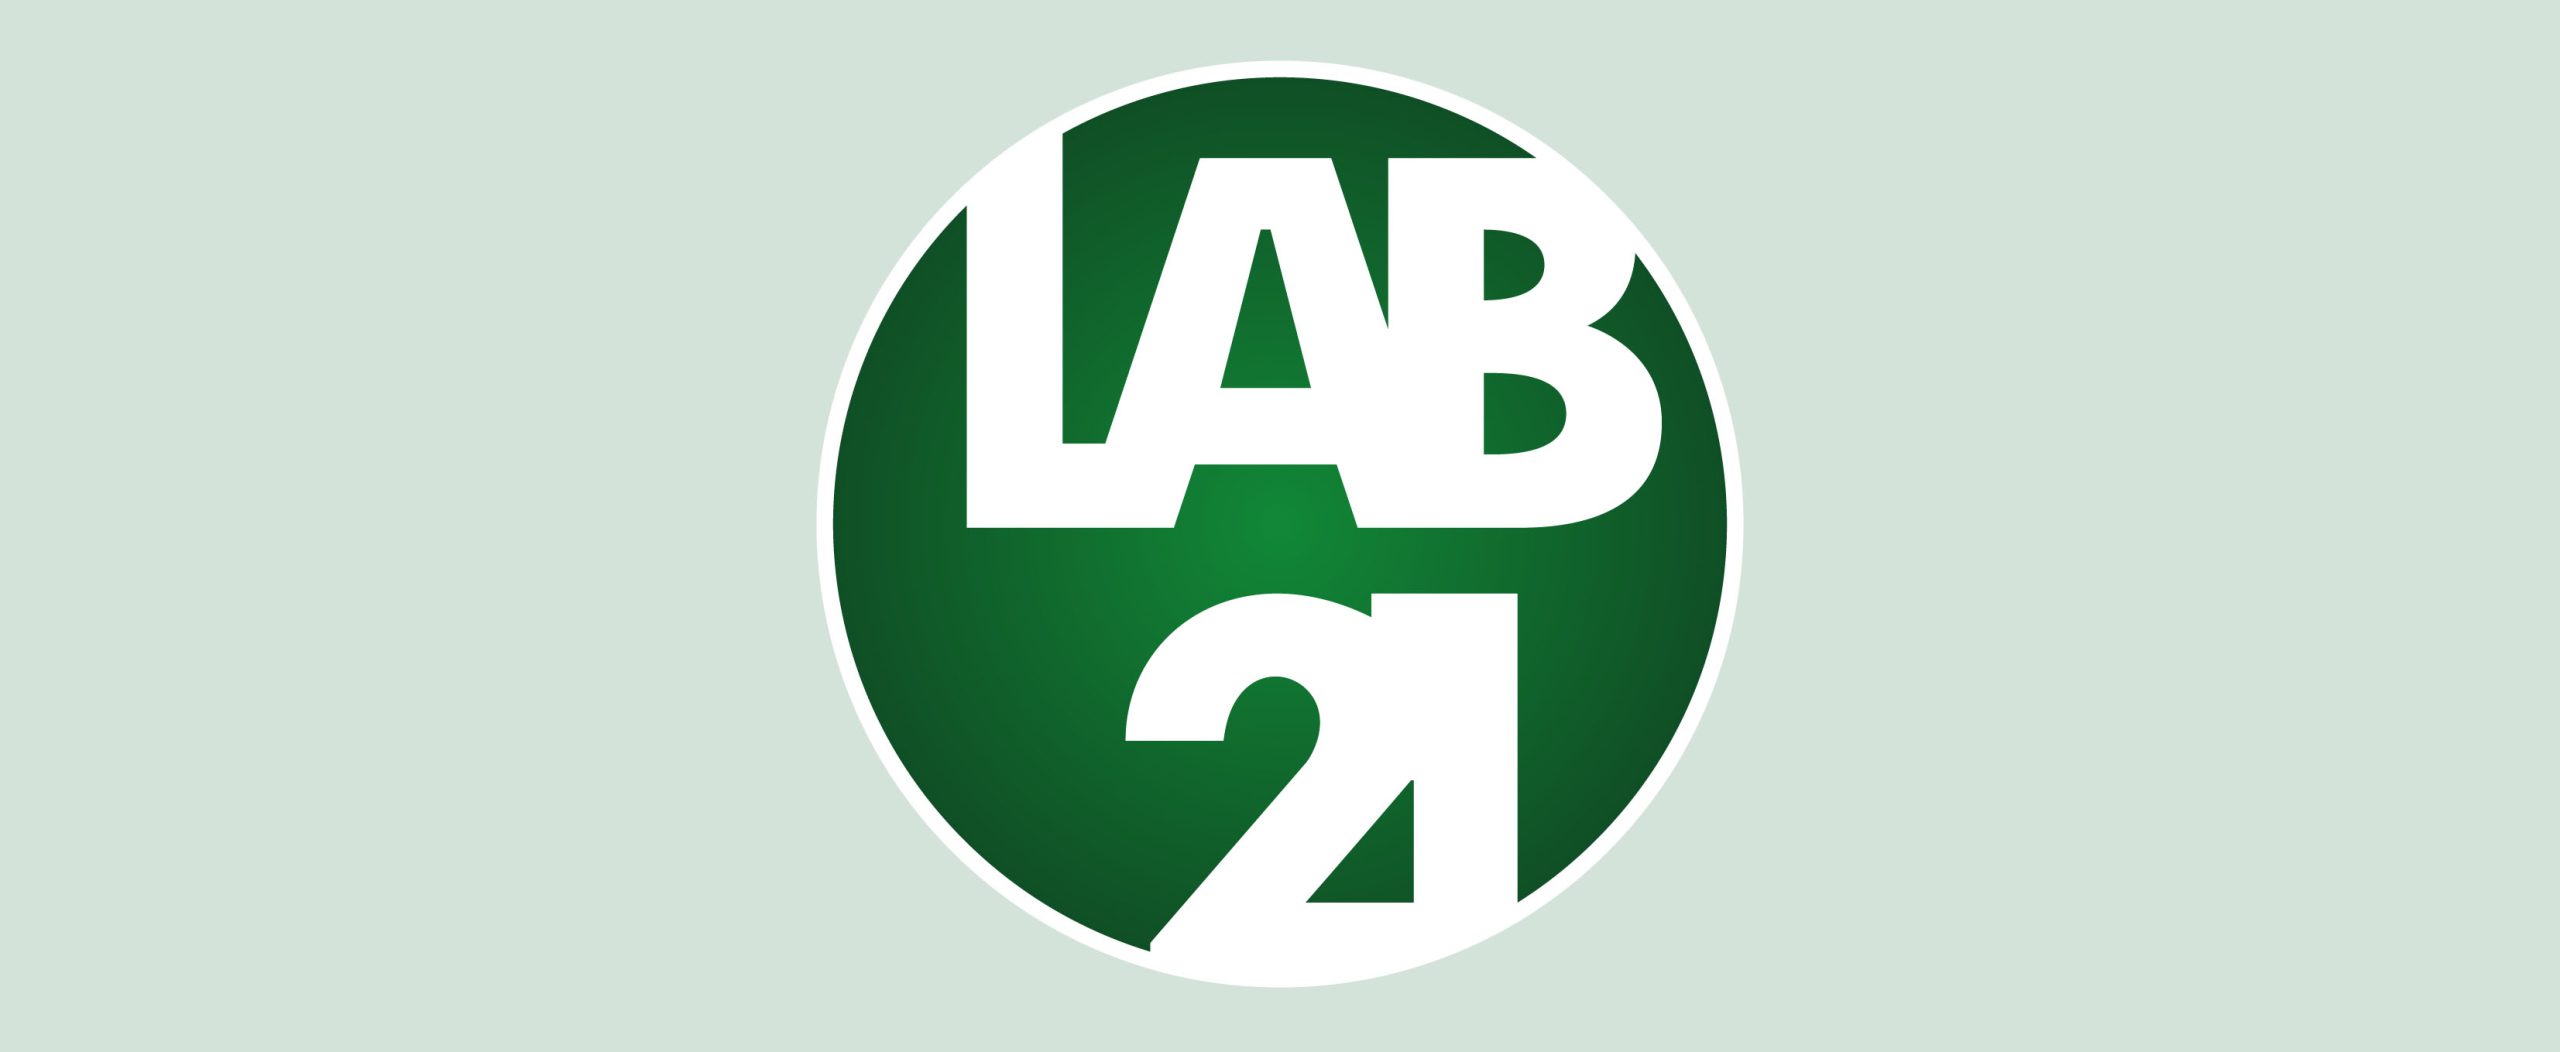 lab21